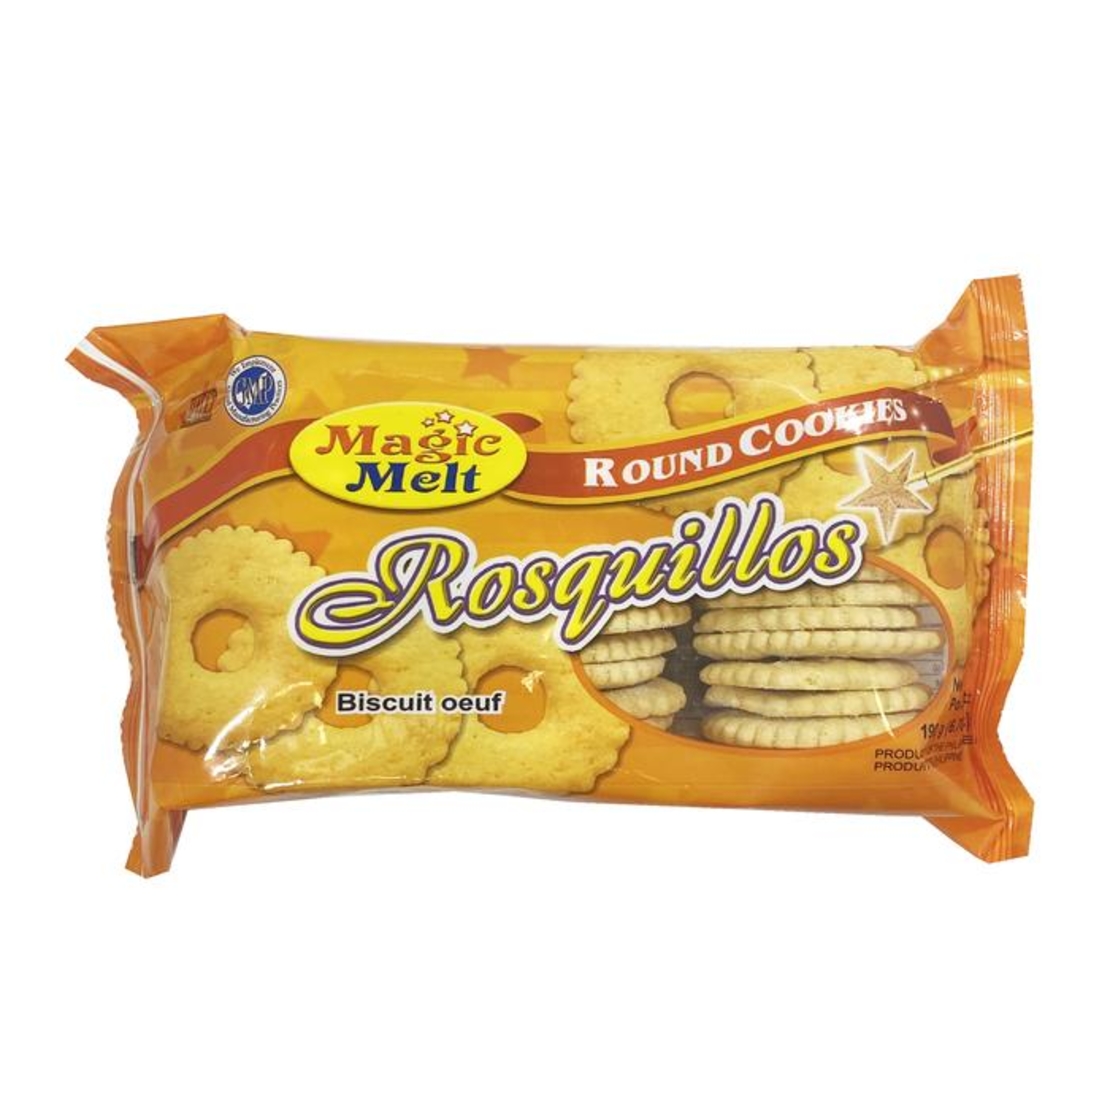 Magic Melt - Rosquillos Round Cookies 190g